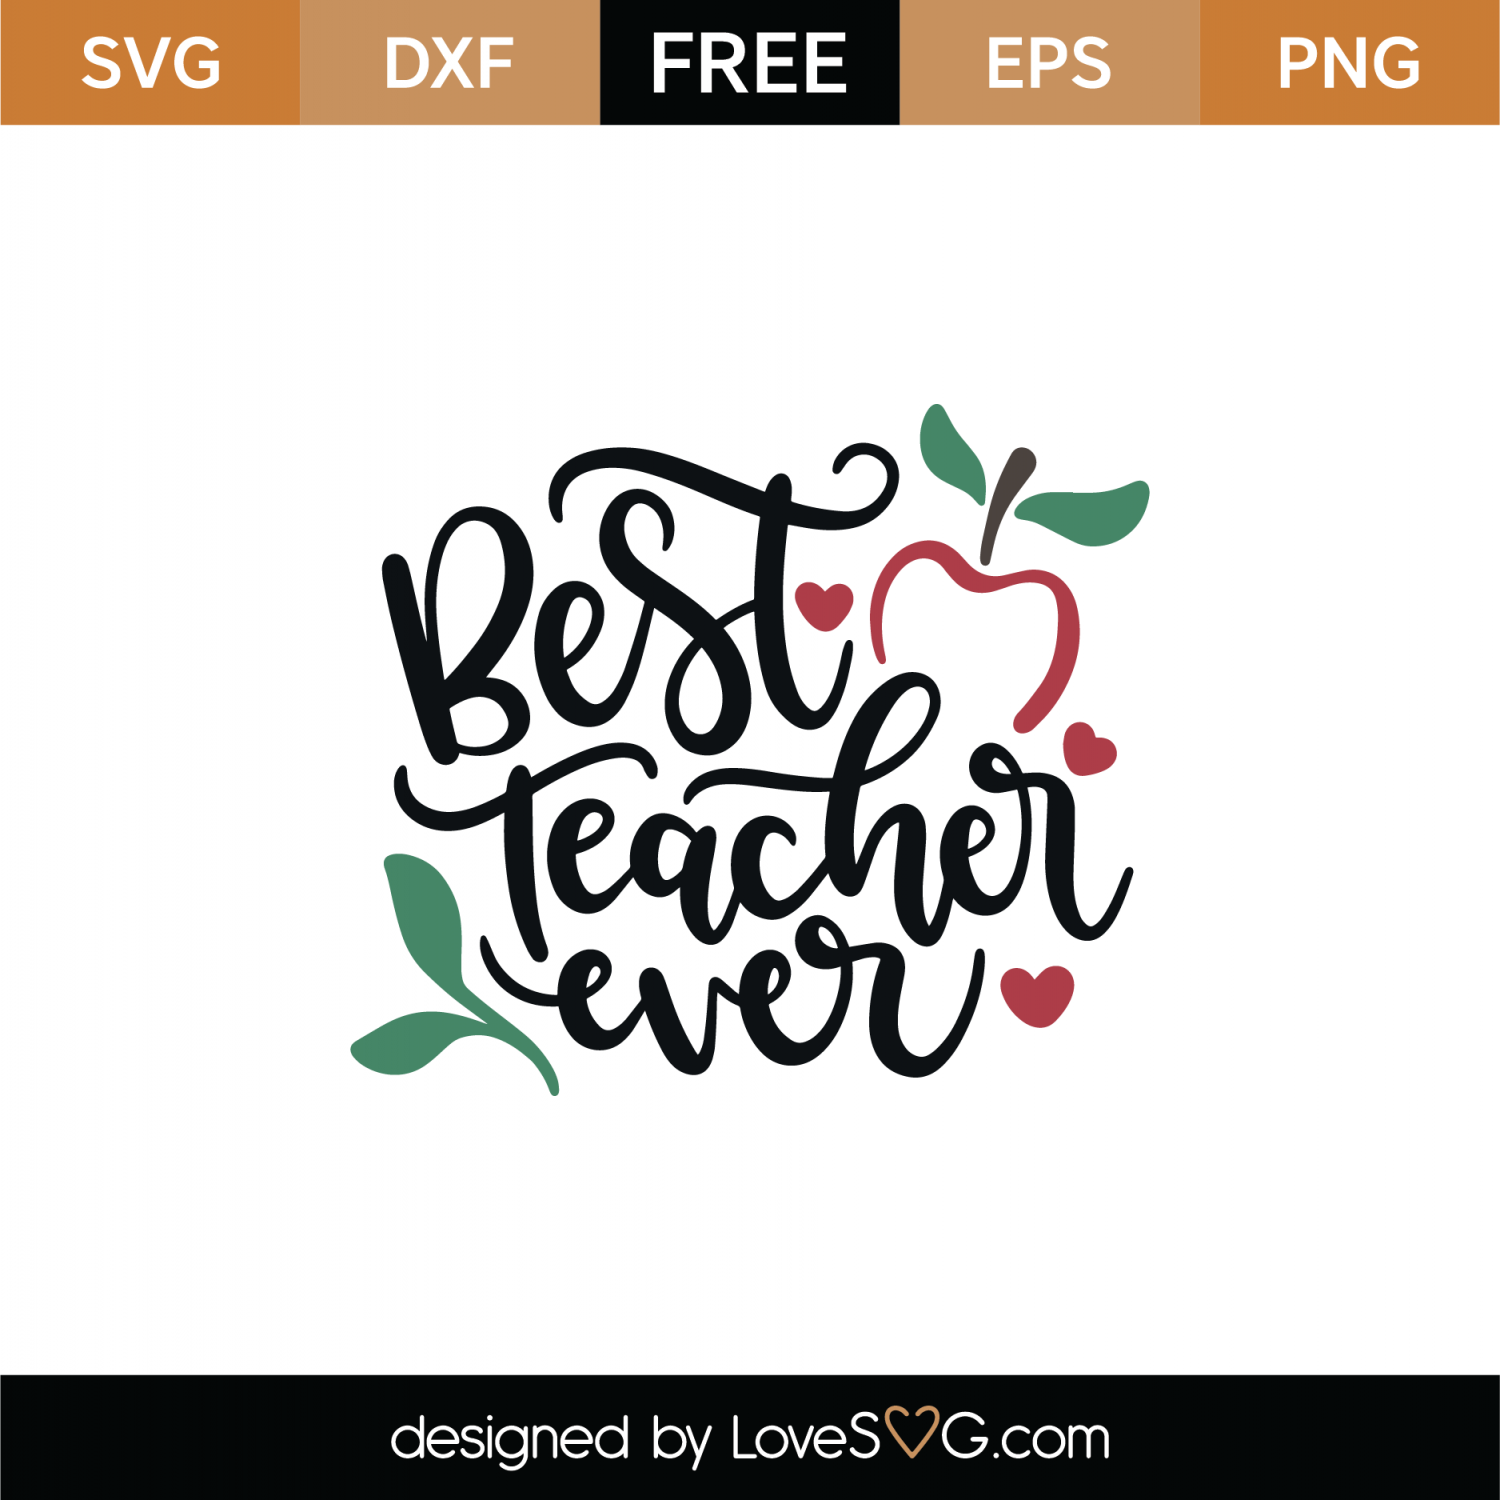 Download Free Best Teacher Ever SVG Cut File | Lovesvg.com